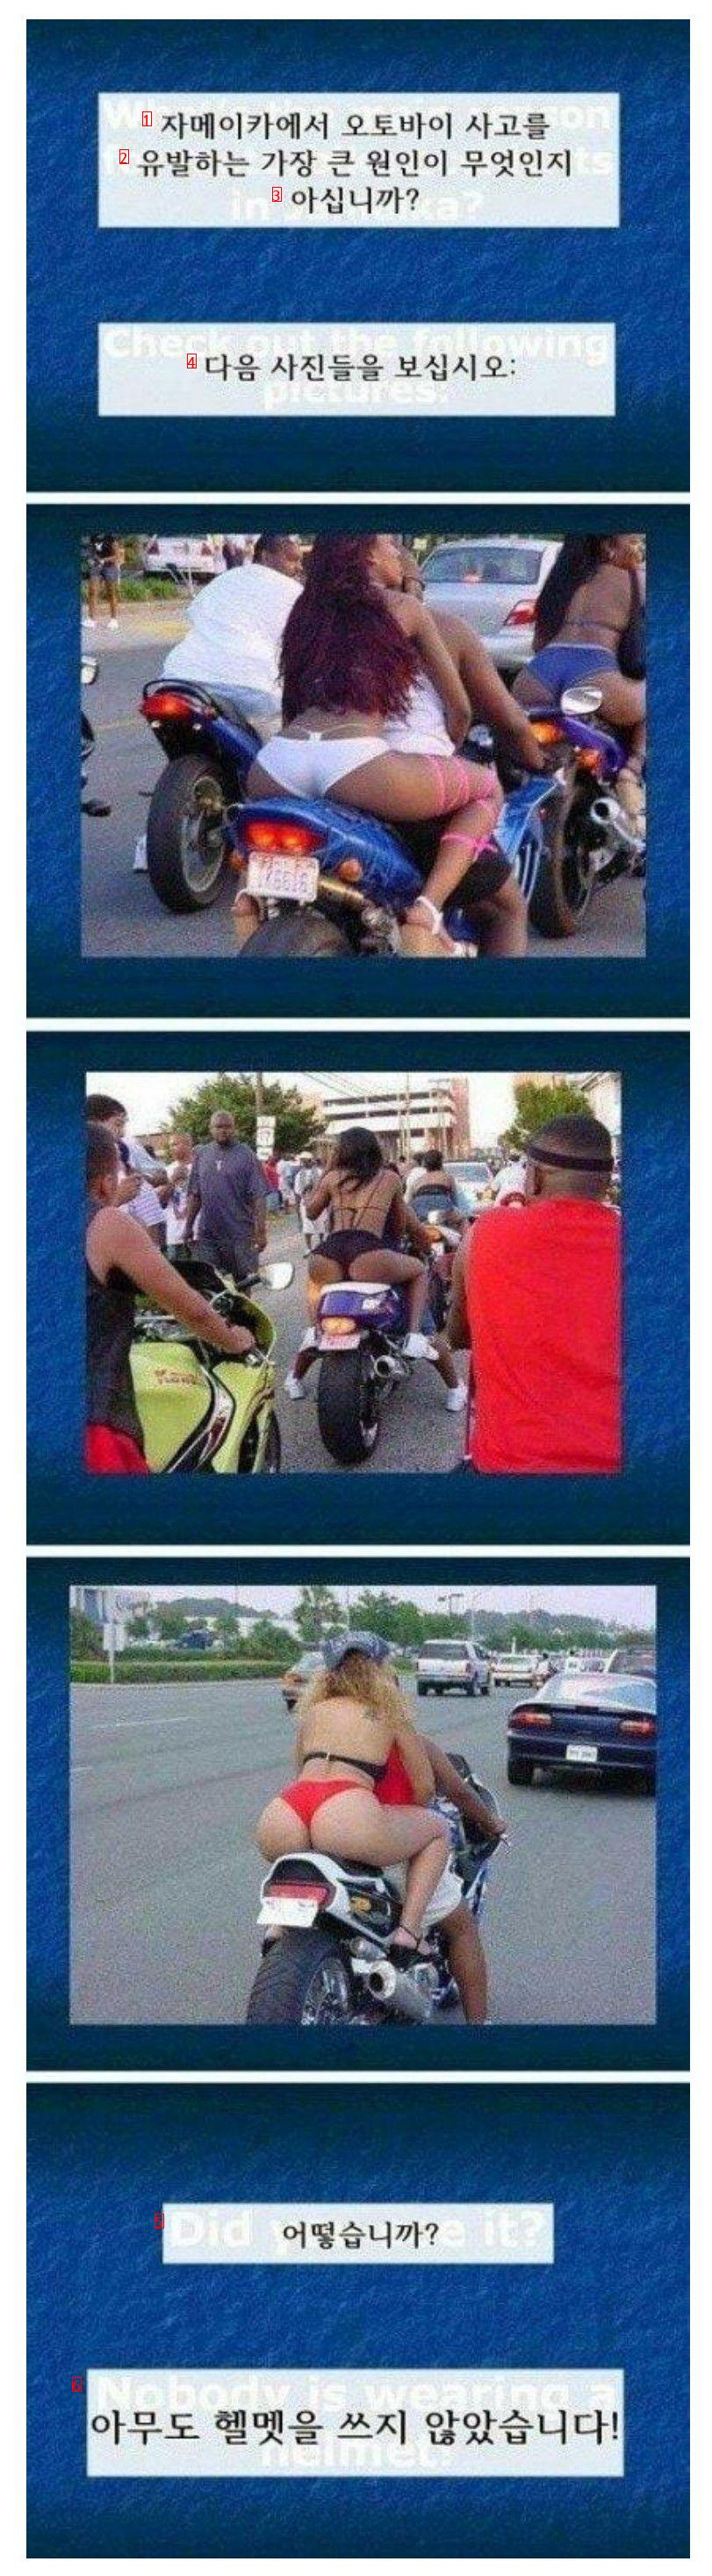 자메이카에서 오토바이사고가 많은이유